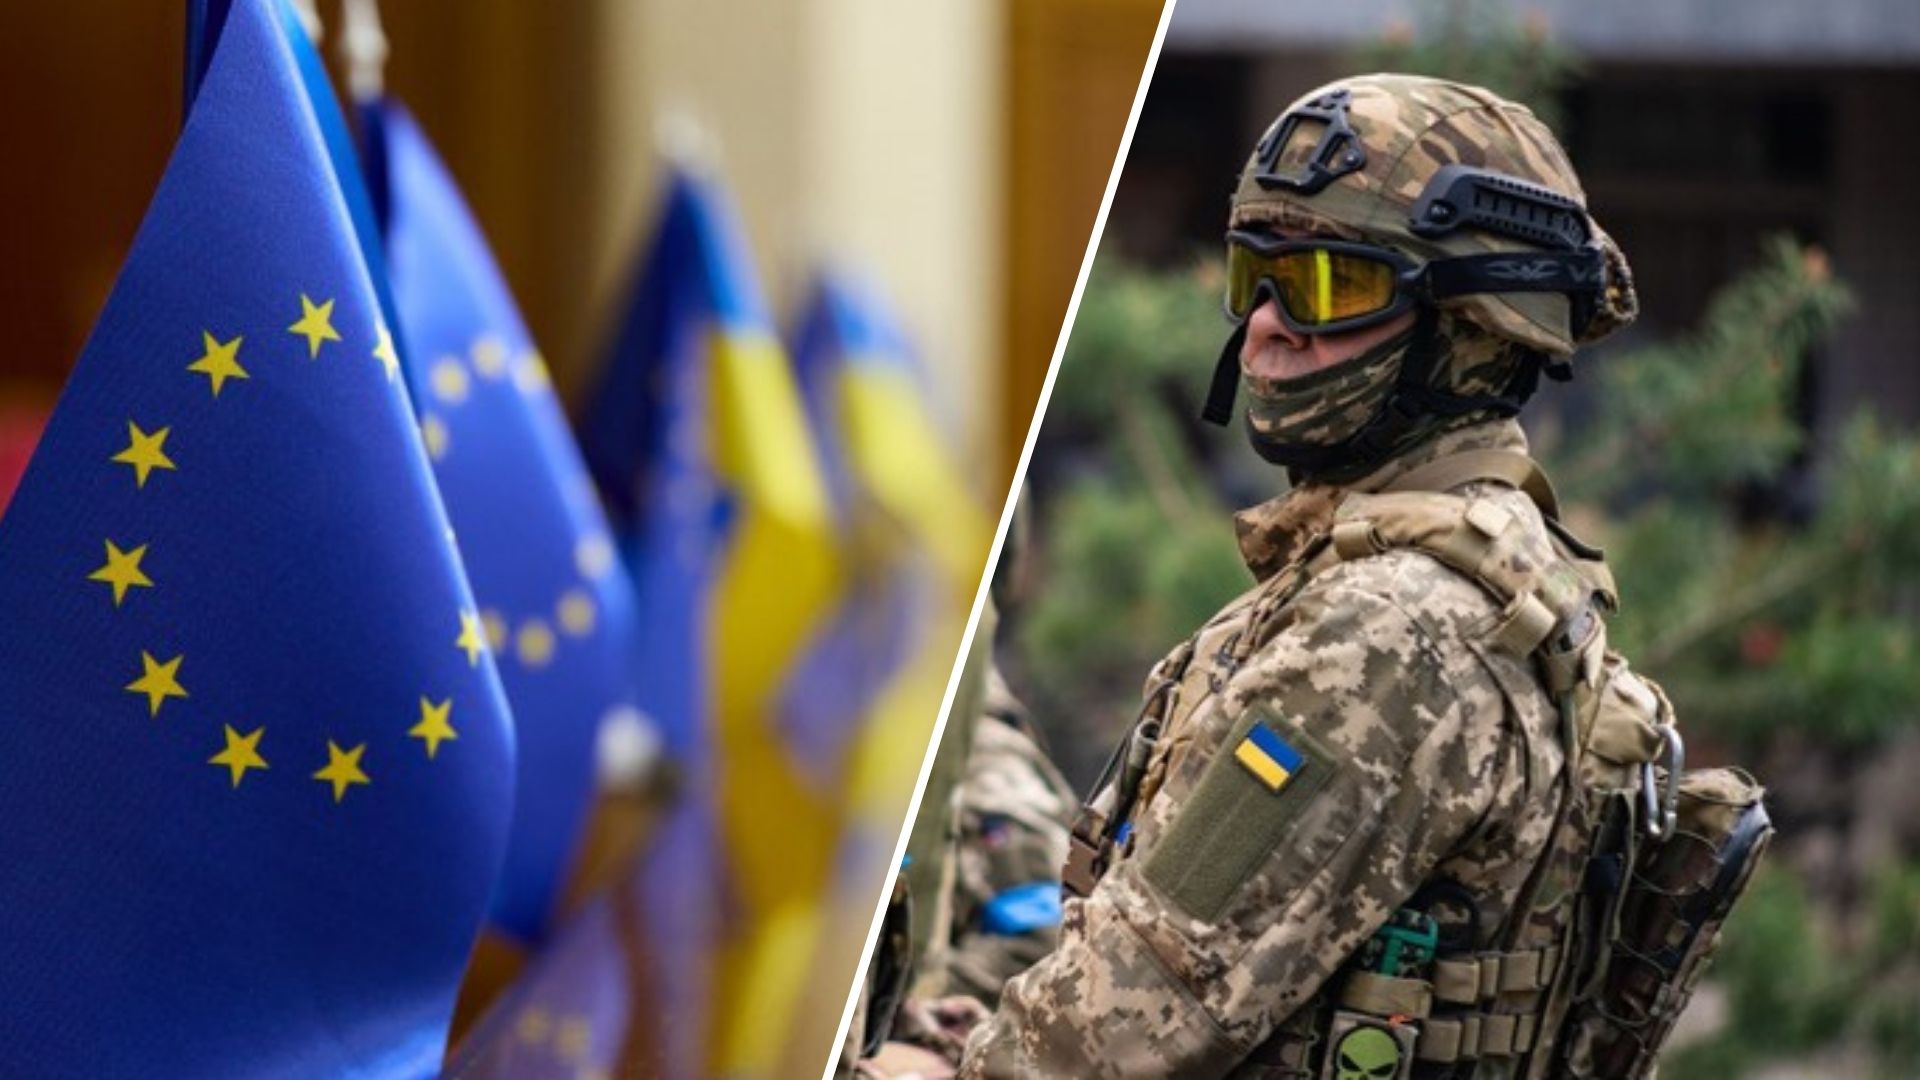 Європейська комісія і високий представник ЄС Жозеп Боррель представили першу стратегію європейської оборонної промисловості на рівні Євросоюзу, яка передбачає більш тісну співпрацю з Україною, і запропонували амбіційний набір нових заходів для підтримки конкурентоспроможності та готовності європейської оборонної промисловості.